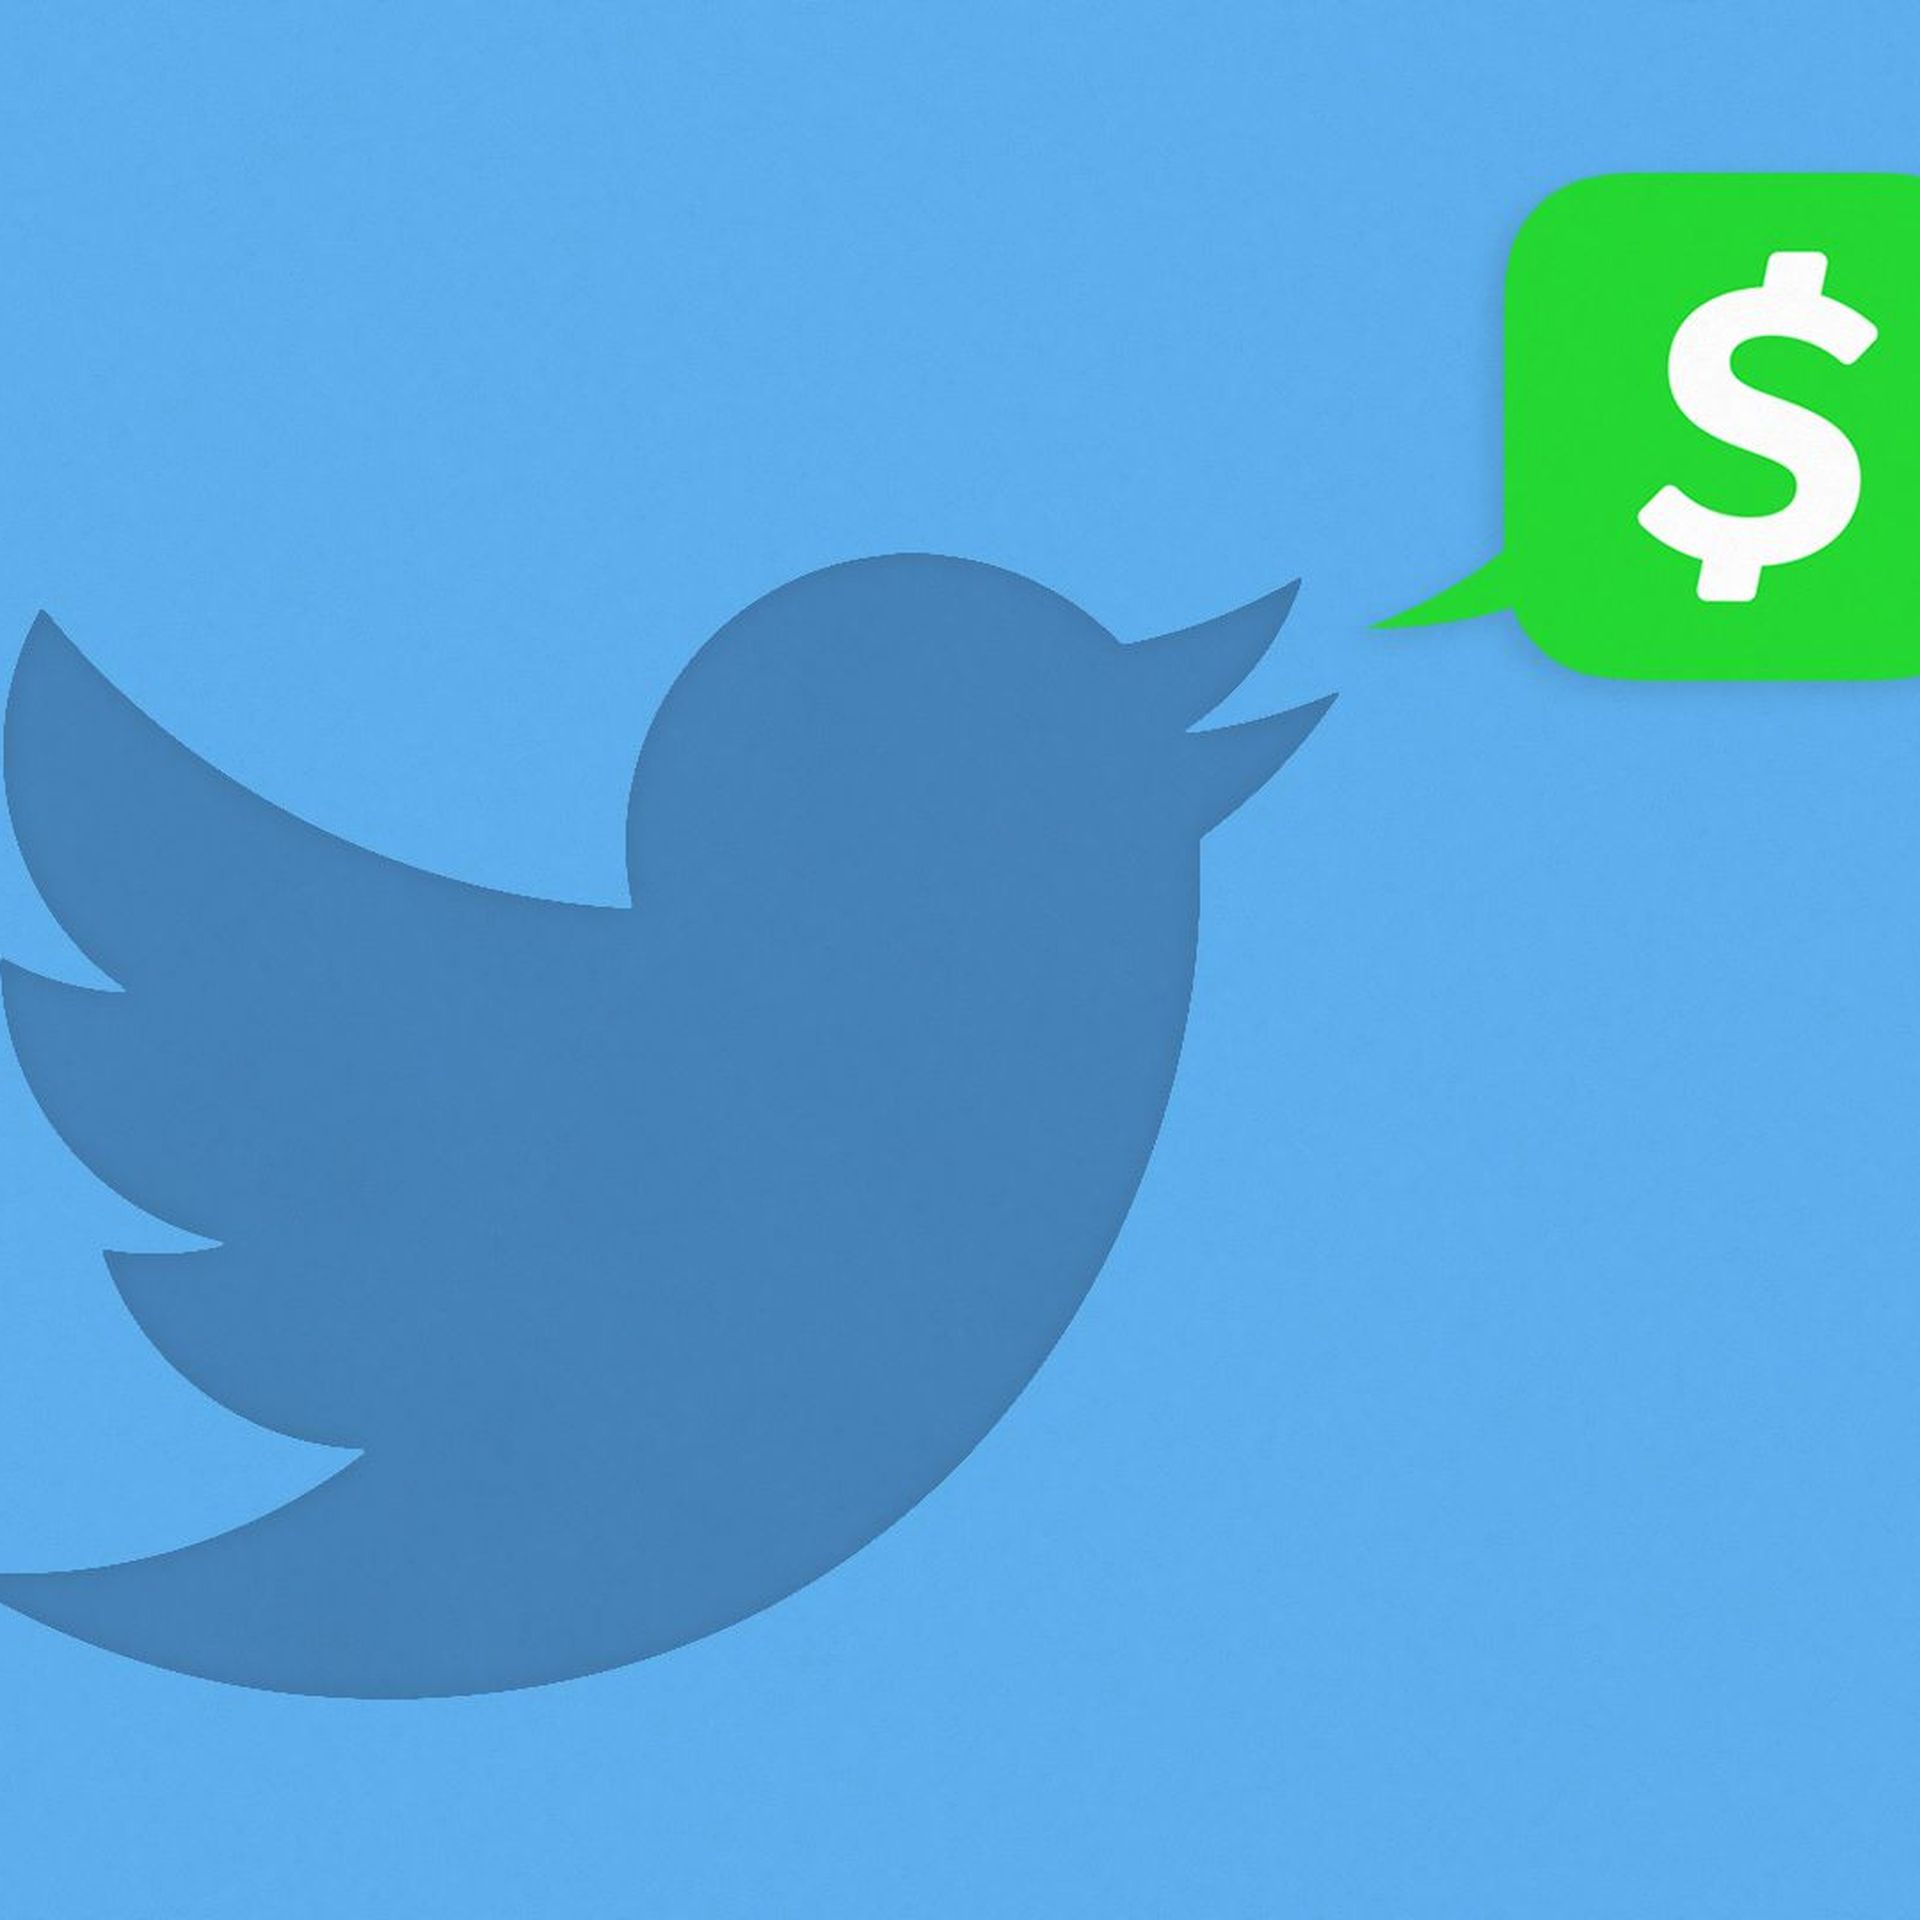 Twitter logo with speech bubble of Cash App logo